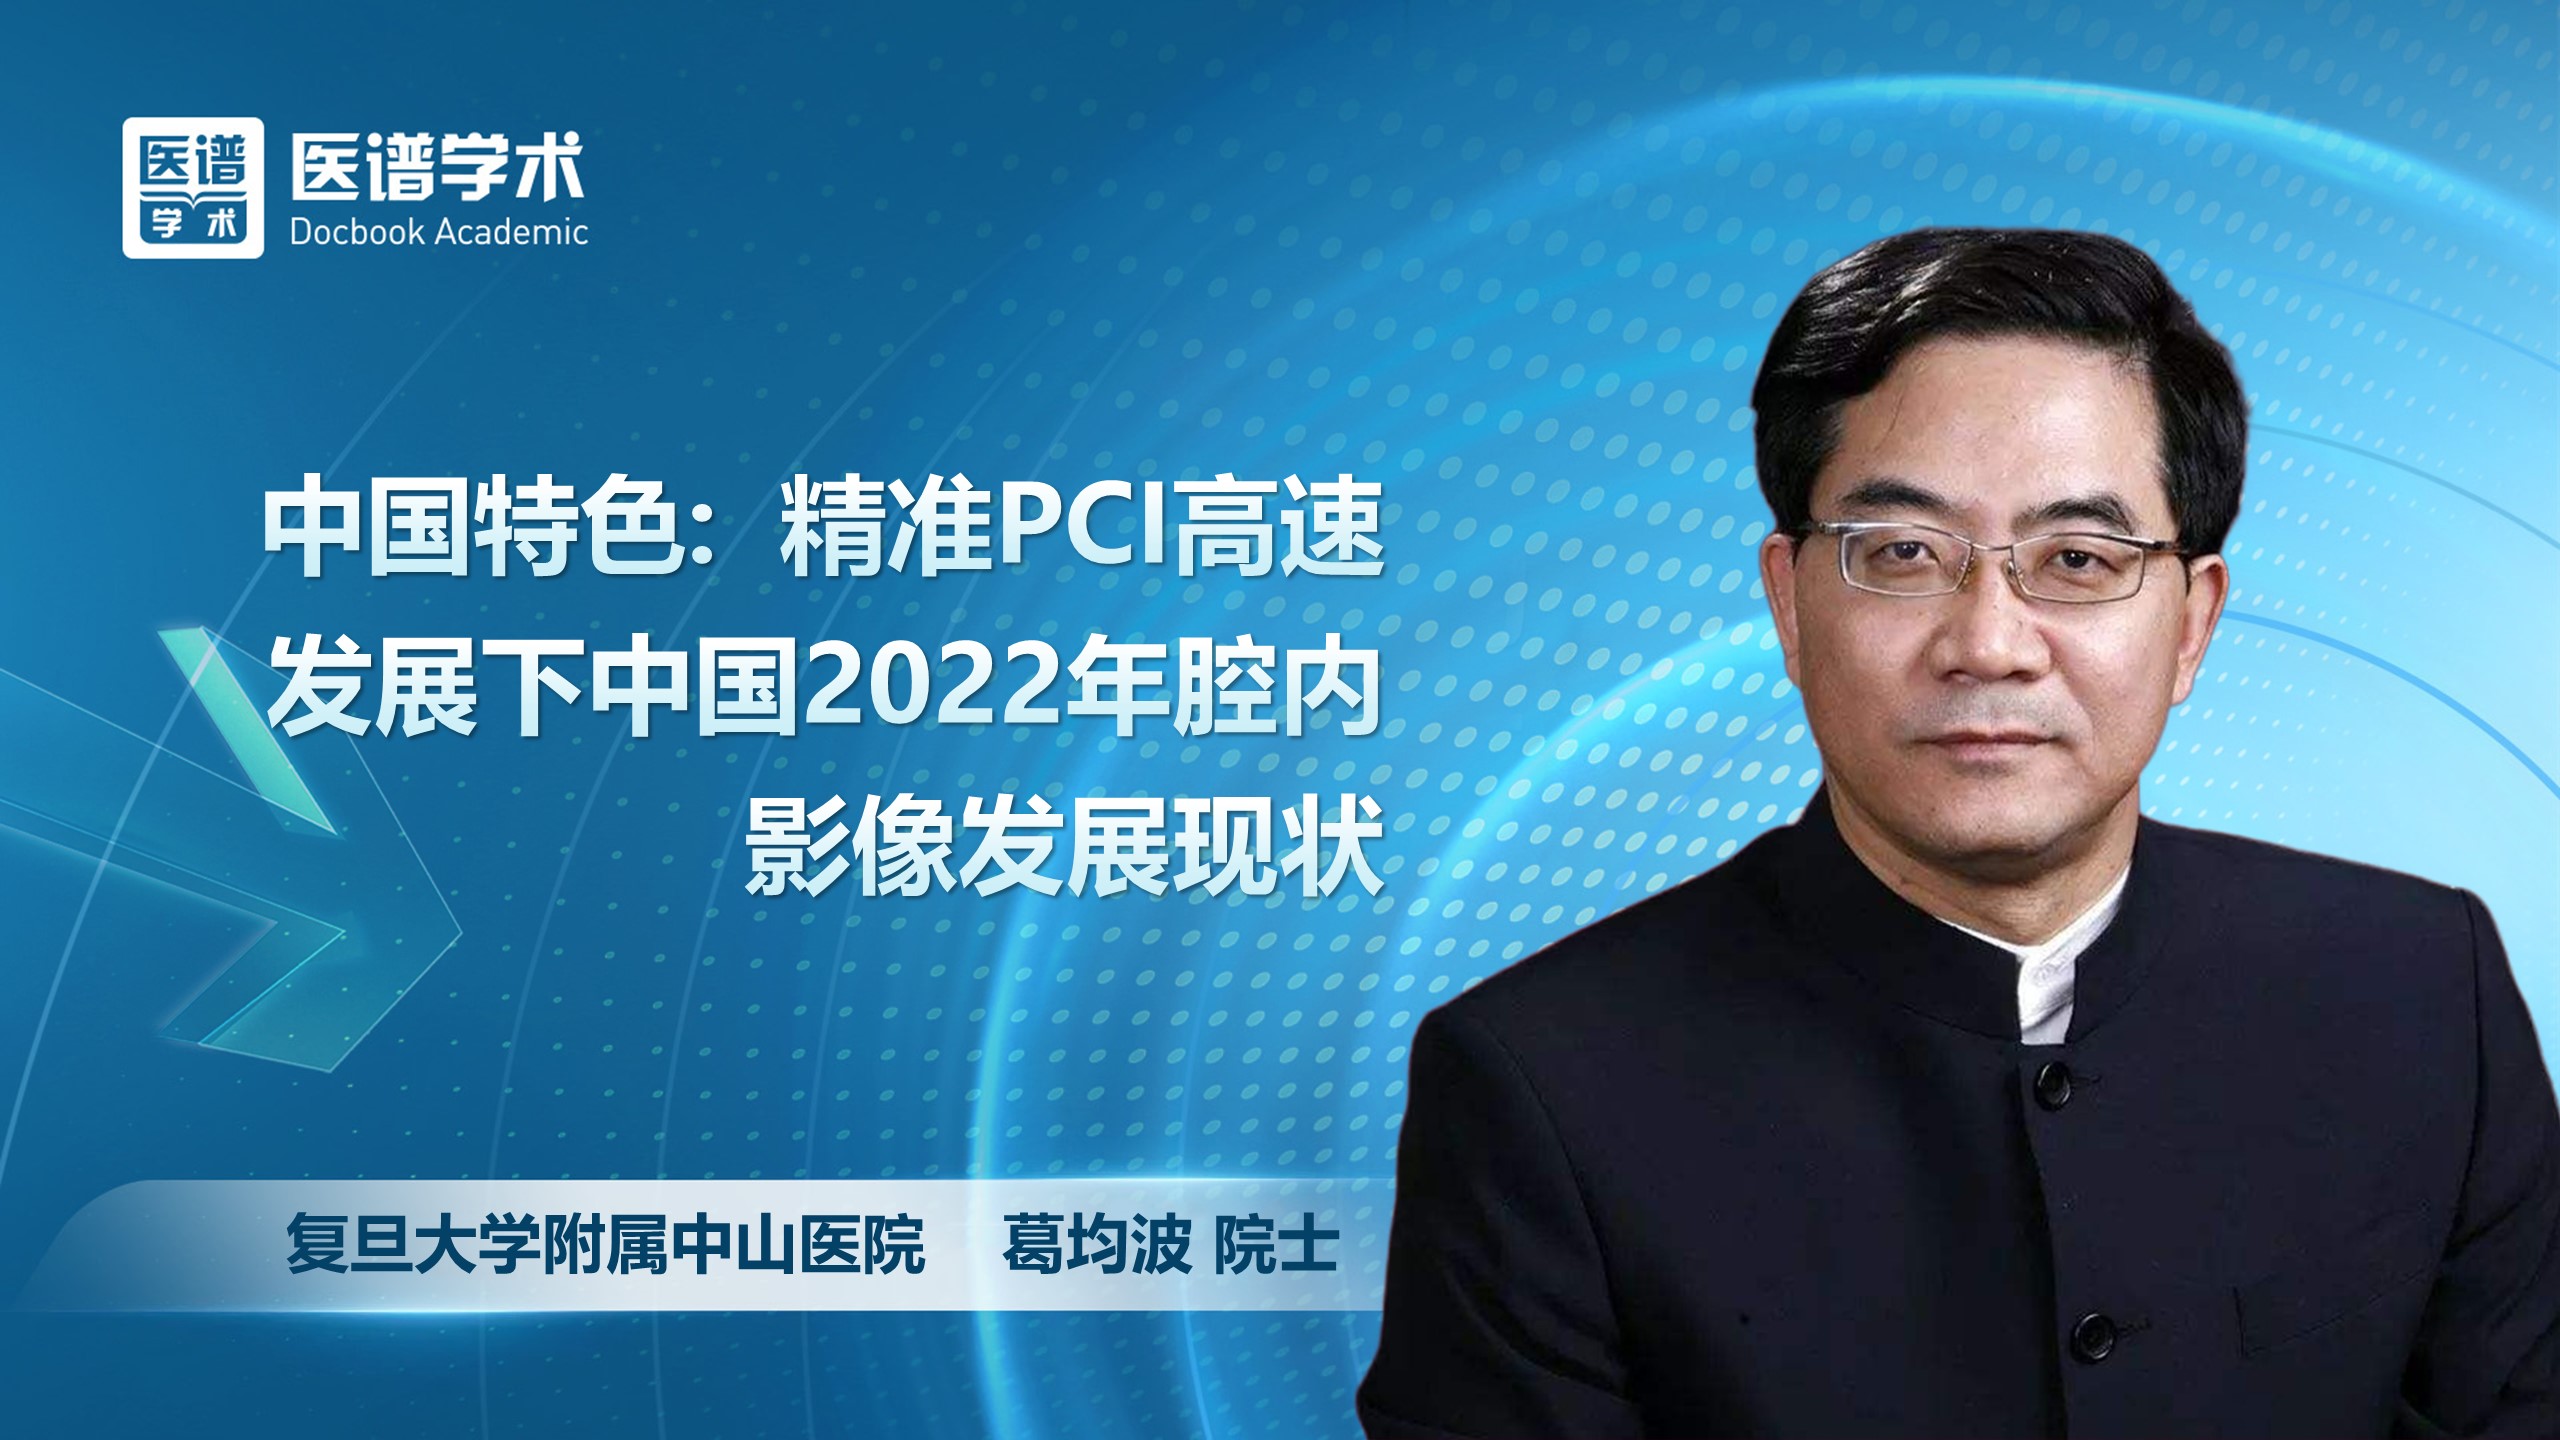 葛均波-中国特色: 精准PCI高速发展下中国2022年腔内影像发展现状